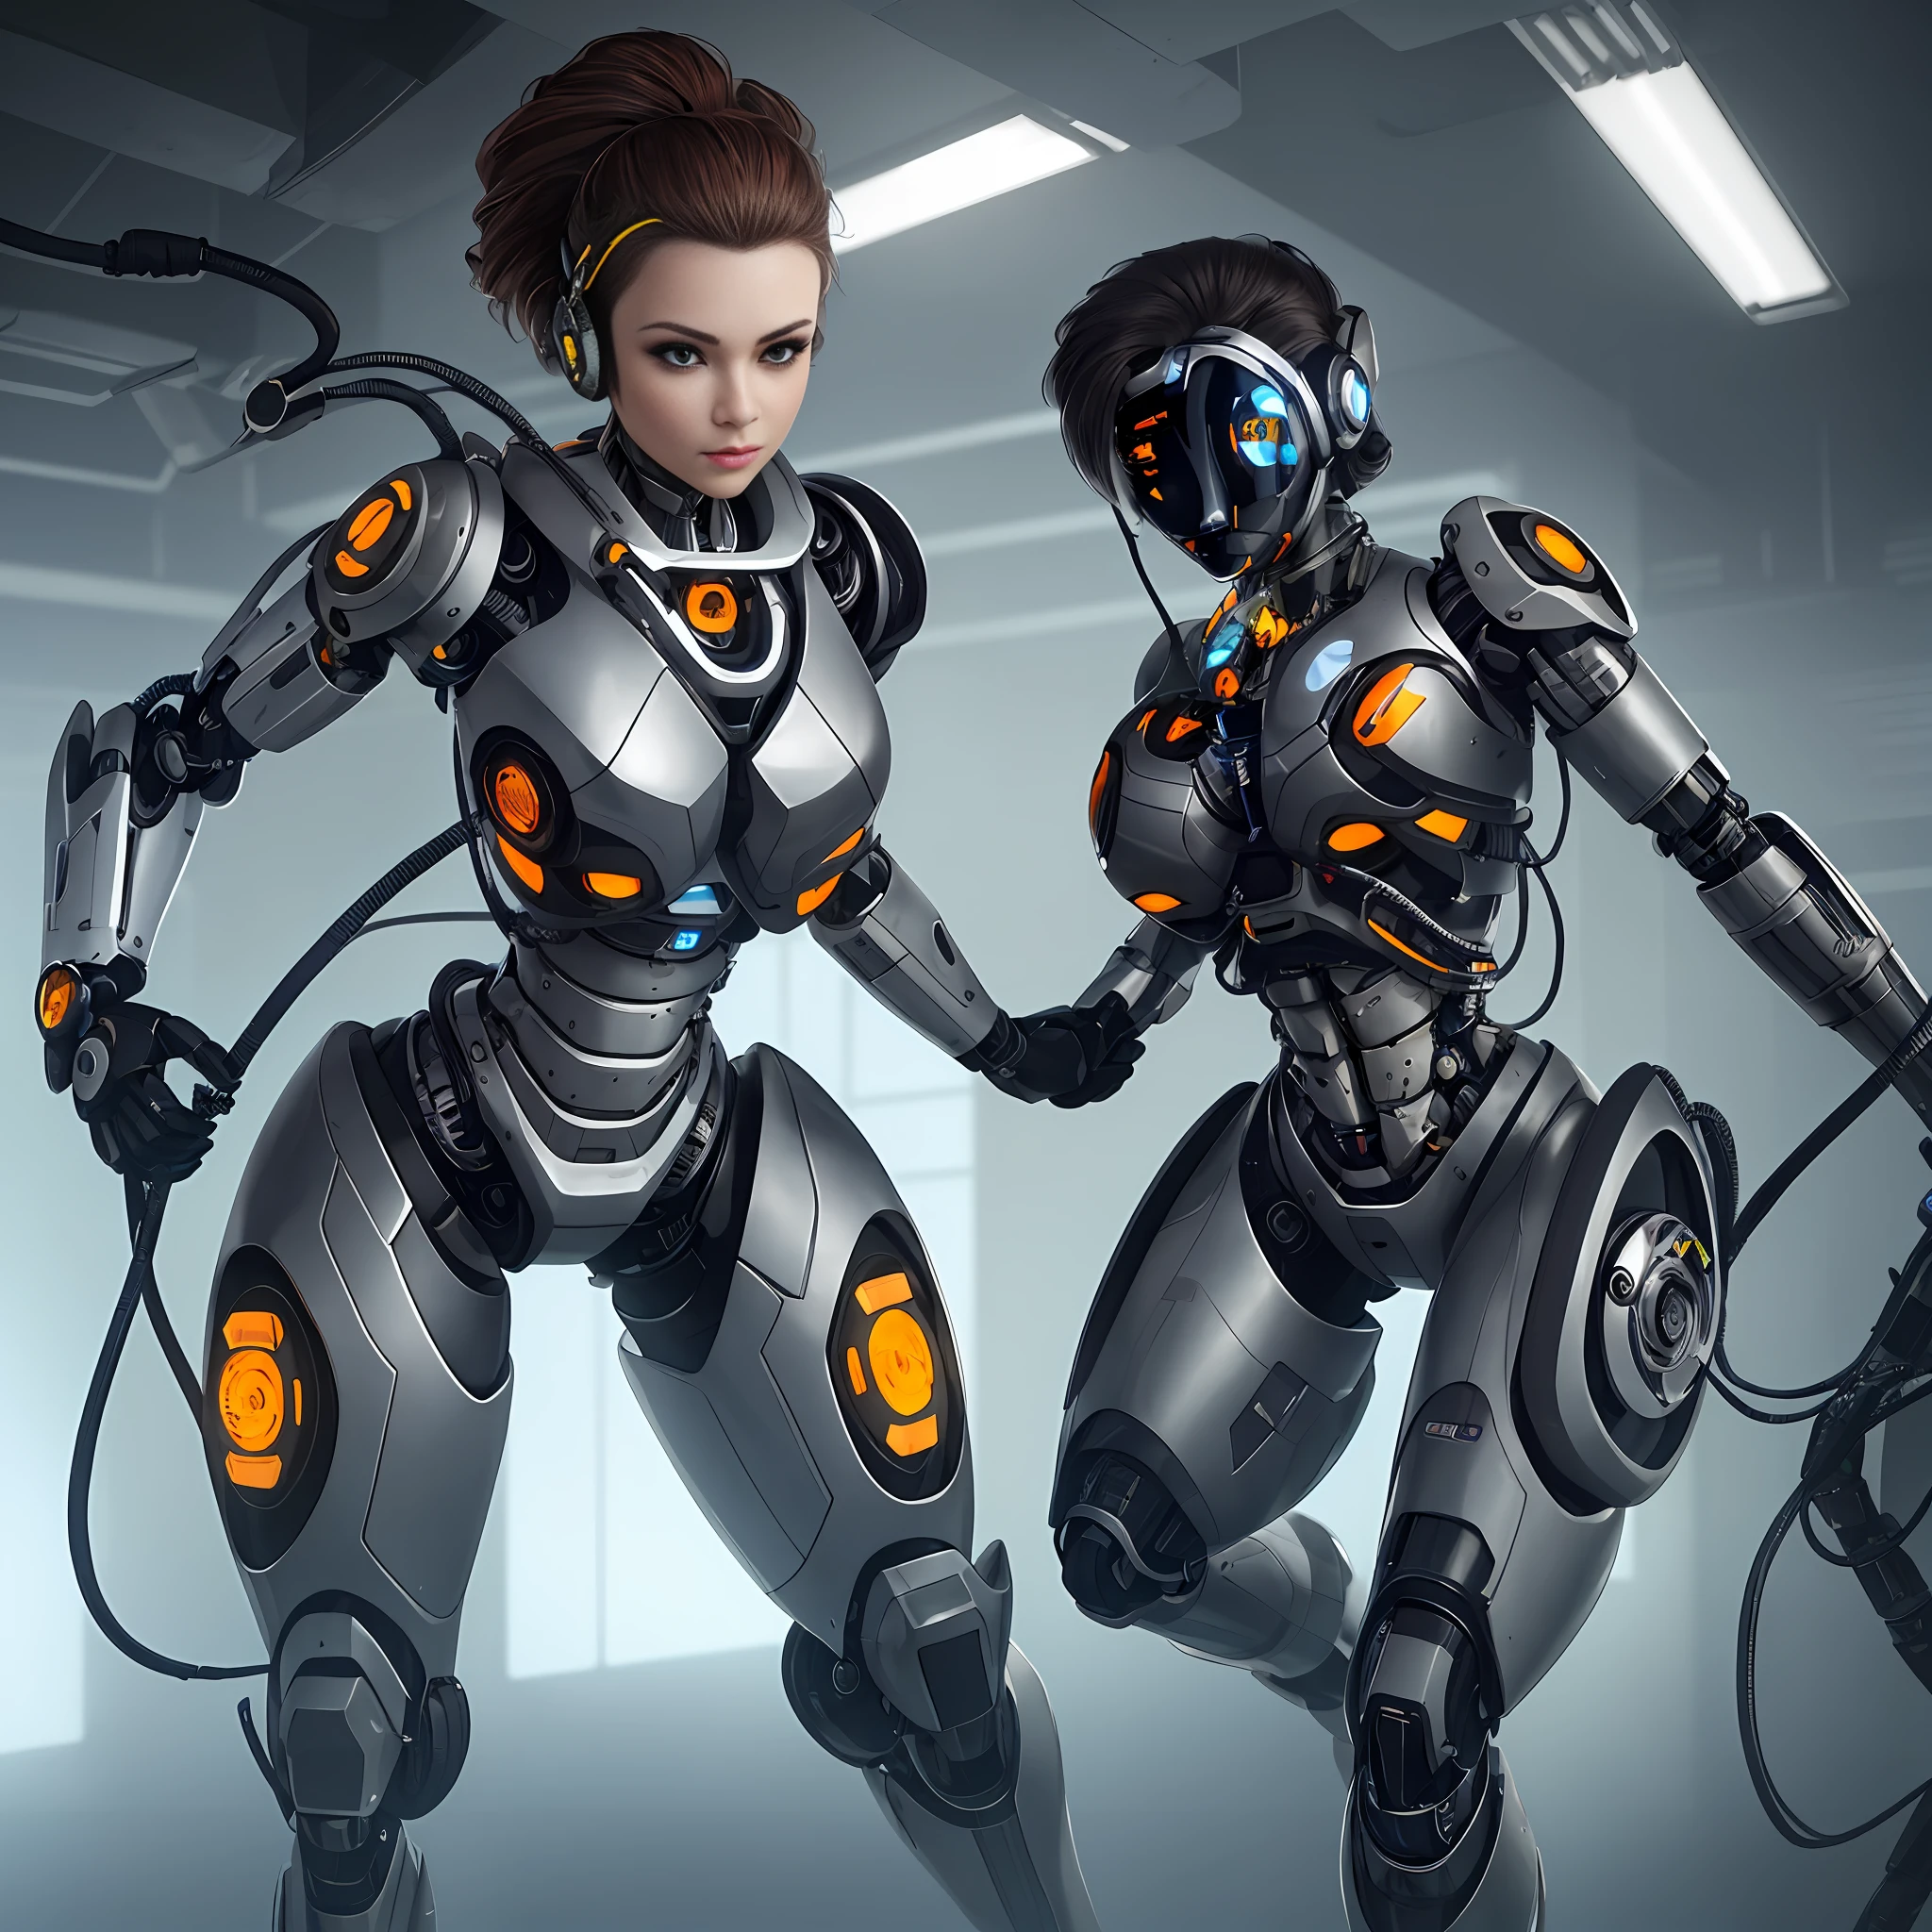 Es gibt zwei Roboter, die nebeneinander stehen, diverse Cyberanzüge, Cyberanzüge, Cyborgs arbeiten, Science-Fiction-Androide weiblich, Wunderschönes Roboter-Charakterdesign, robot cyborgs, schönes Cyborg-Mädchen, süßes Cyborg-Mädchen, inspiriert von Marek Okon, weiblicher Cyborg, Mädchen in Mecha-Cyber-Rüstung, junge Cyborg-Dame, cyborg girl